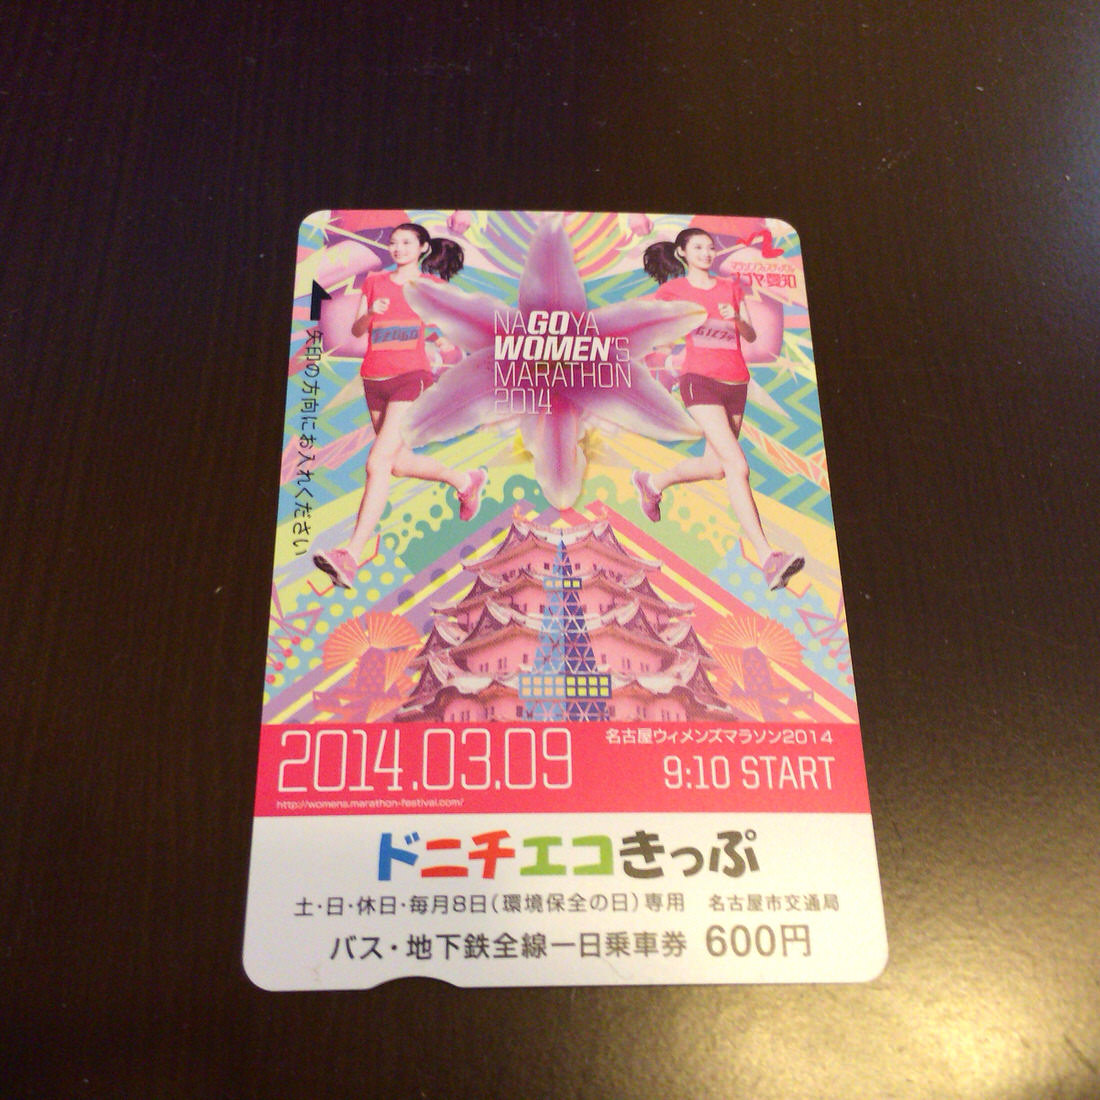 名古屋ウィメンズマラソン2014のオリジナルドニチエコきっぷが限定発売されたので購入！